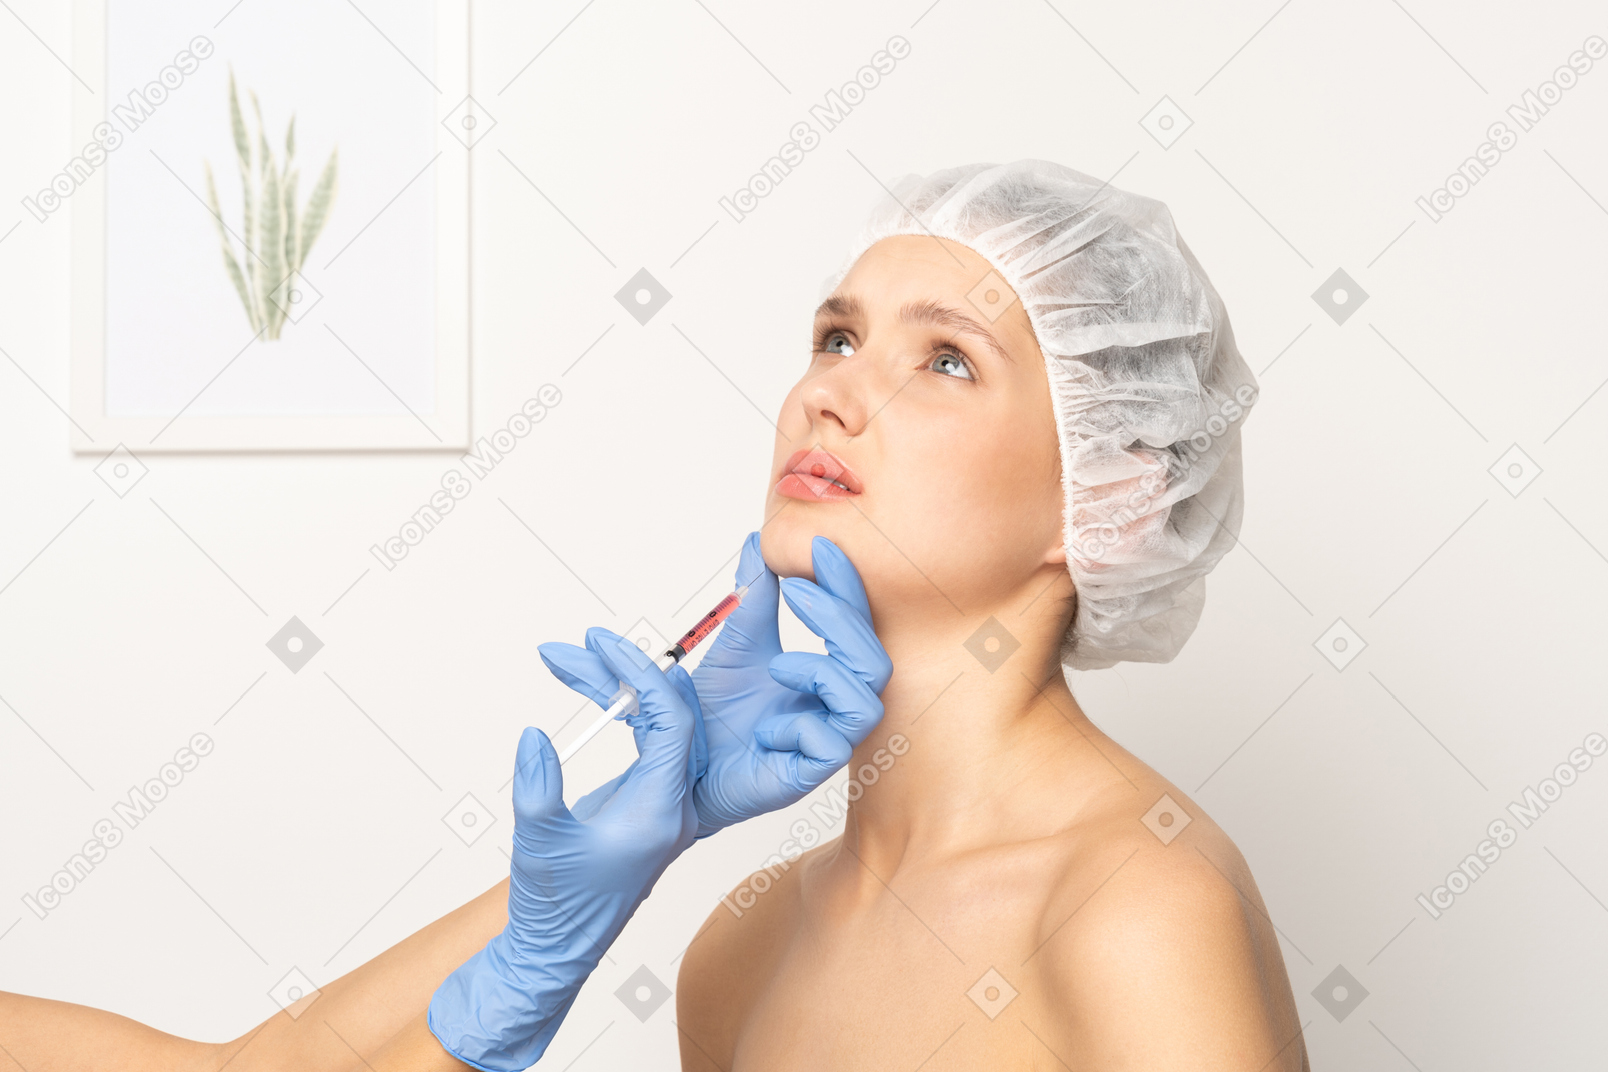 Mulher parecendo nervosa ao receber injeção de botox